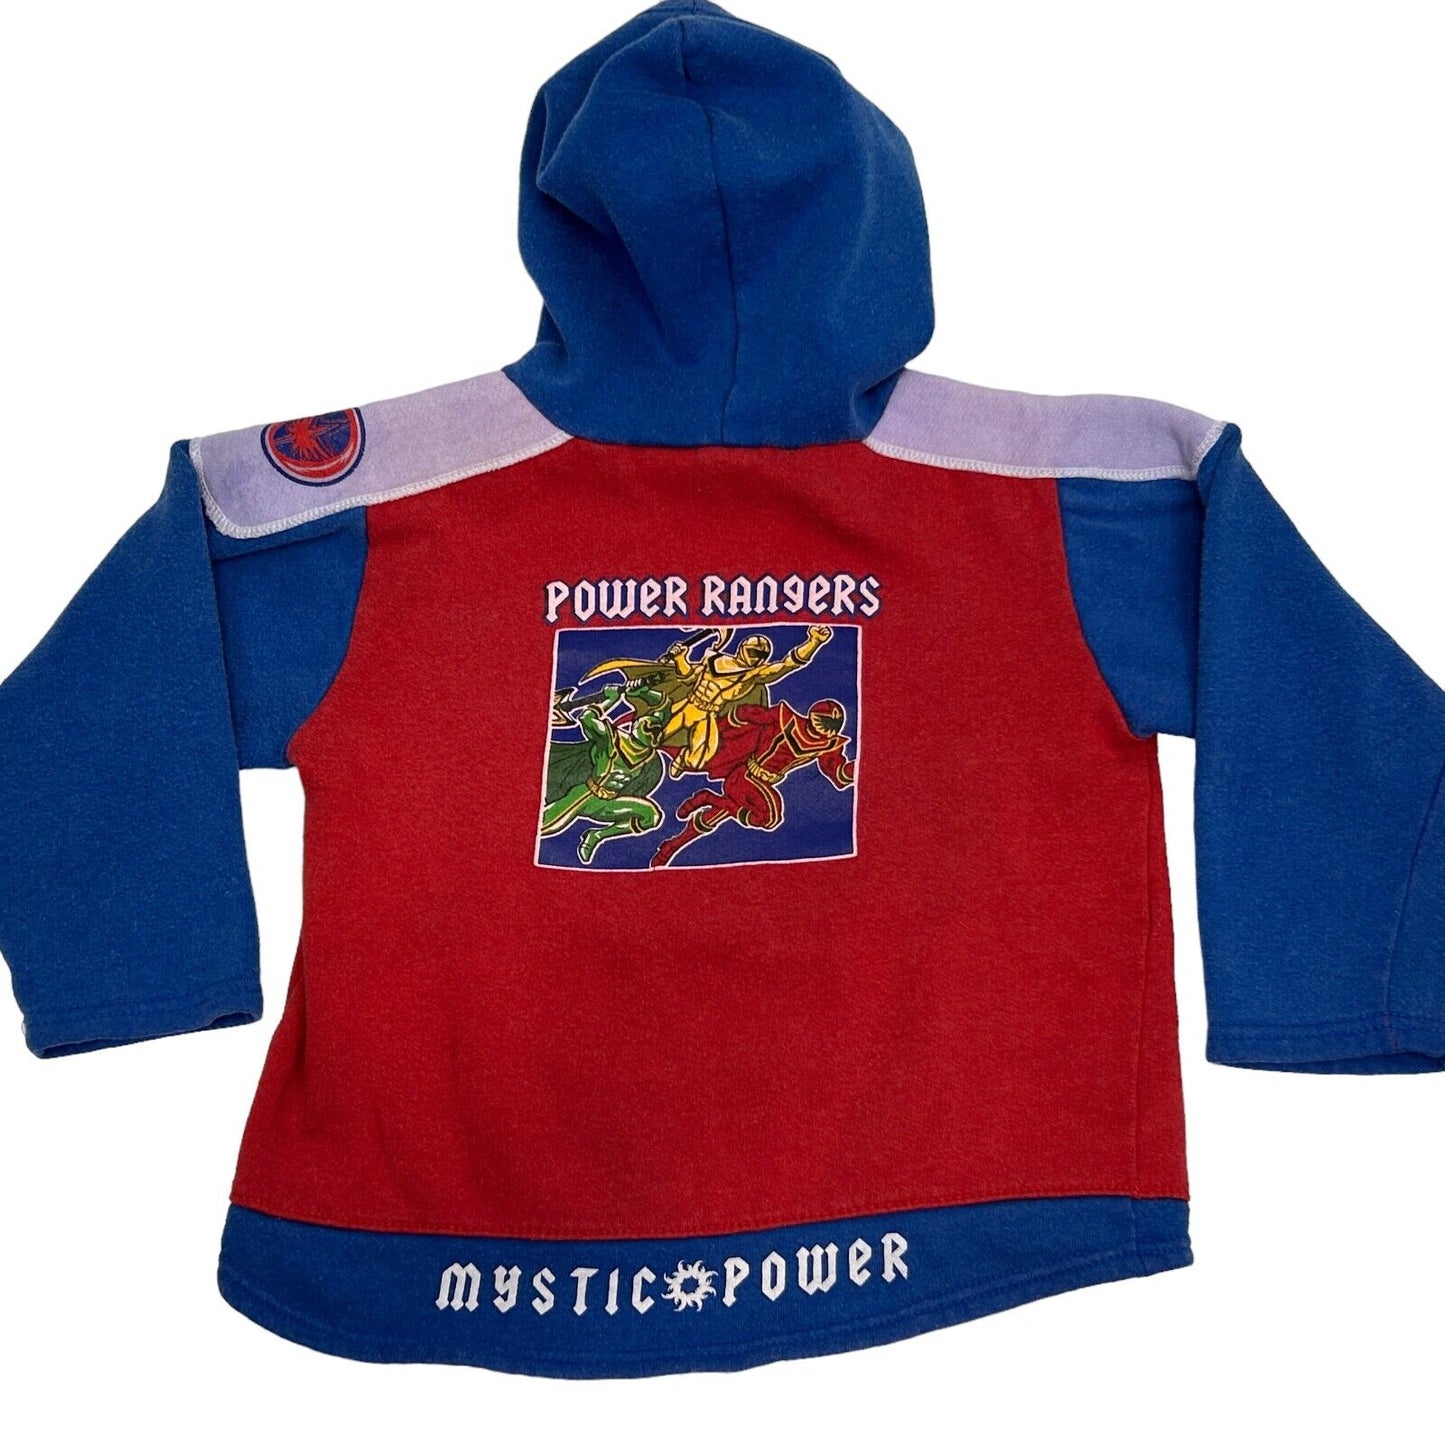 Power Rangers Mystic Force Youth Hoodie Medium Hooded Sweatshirt Boys Kids Red